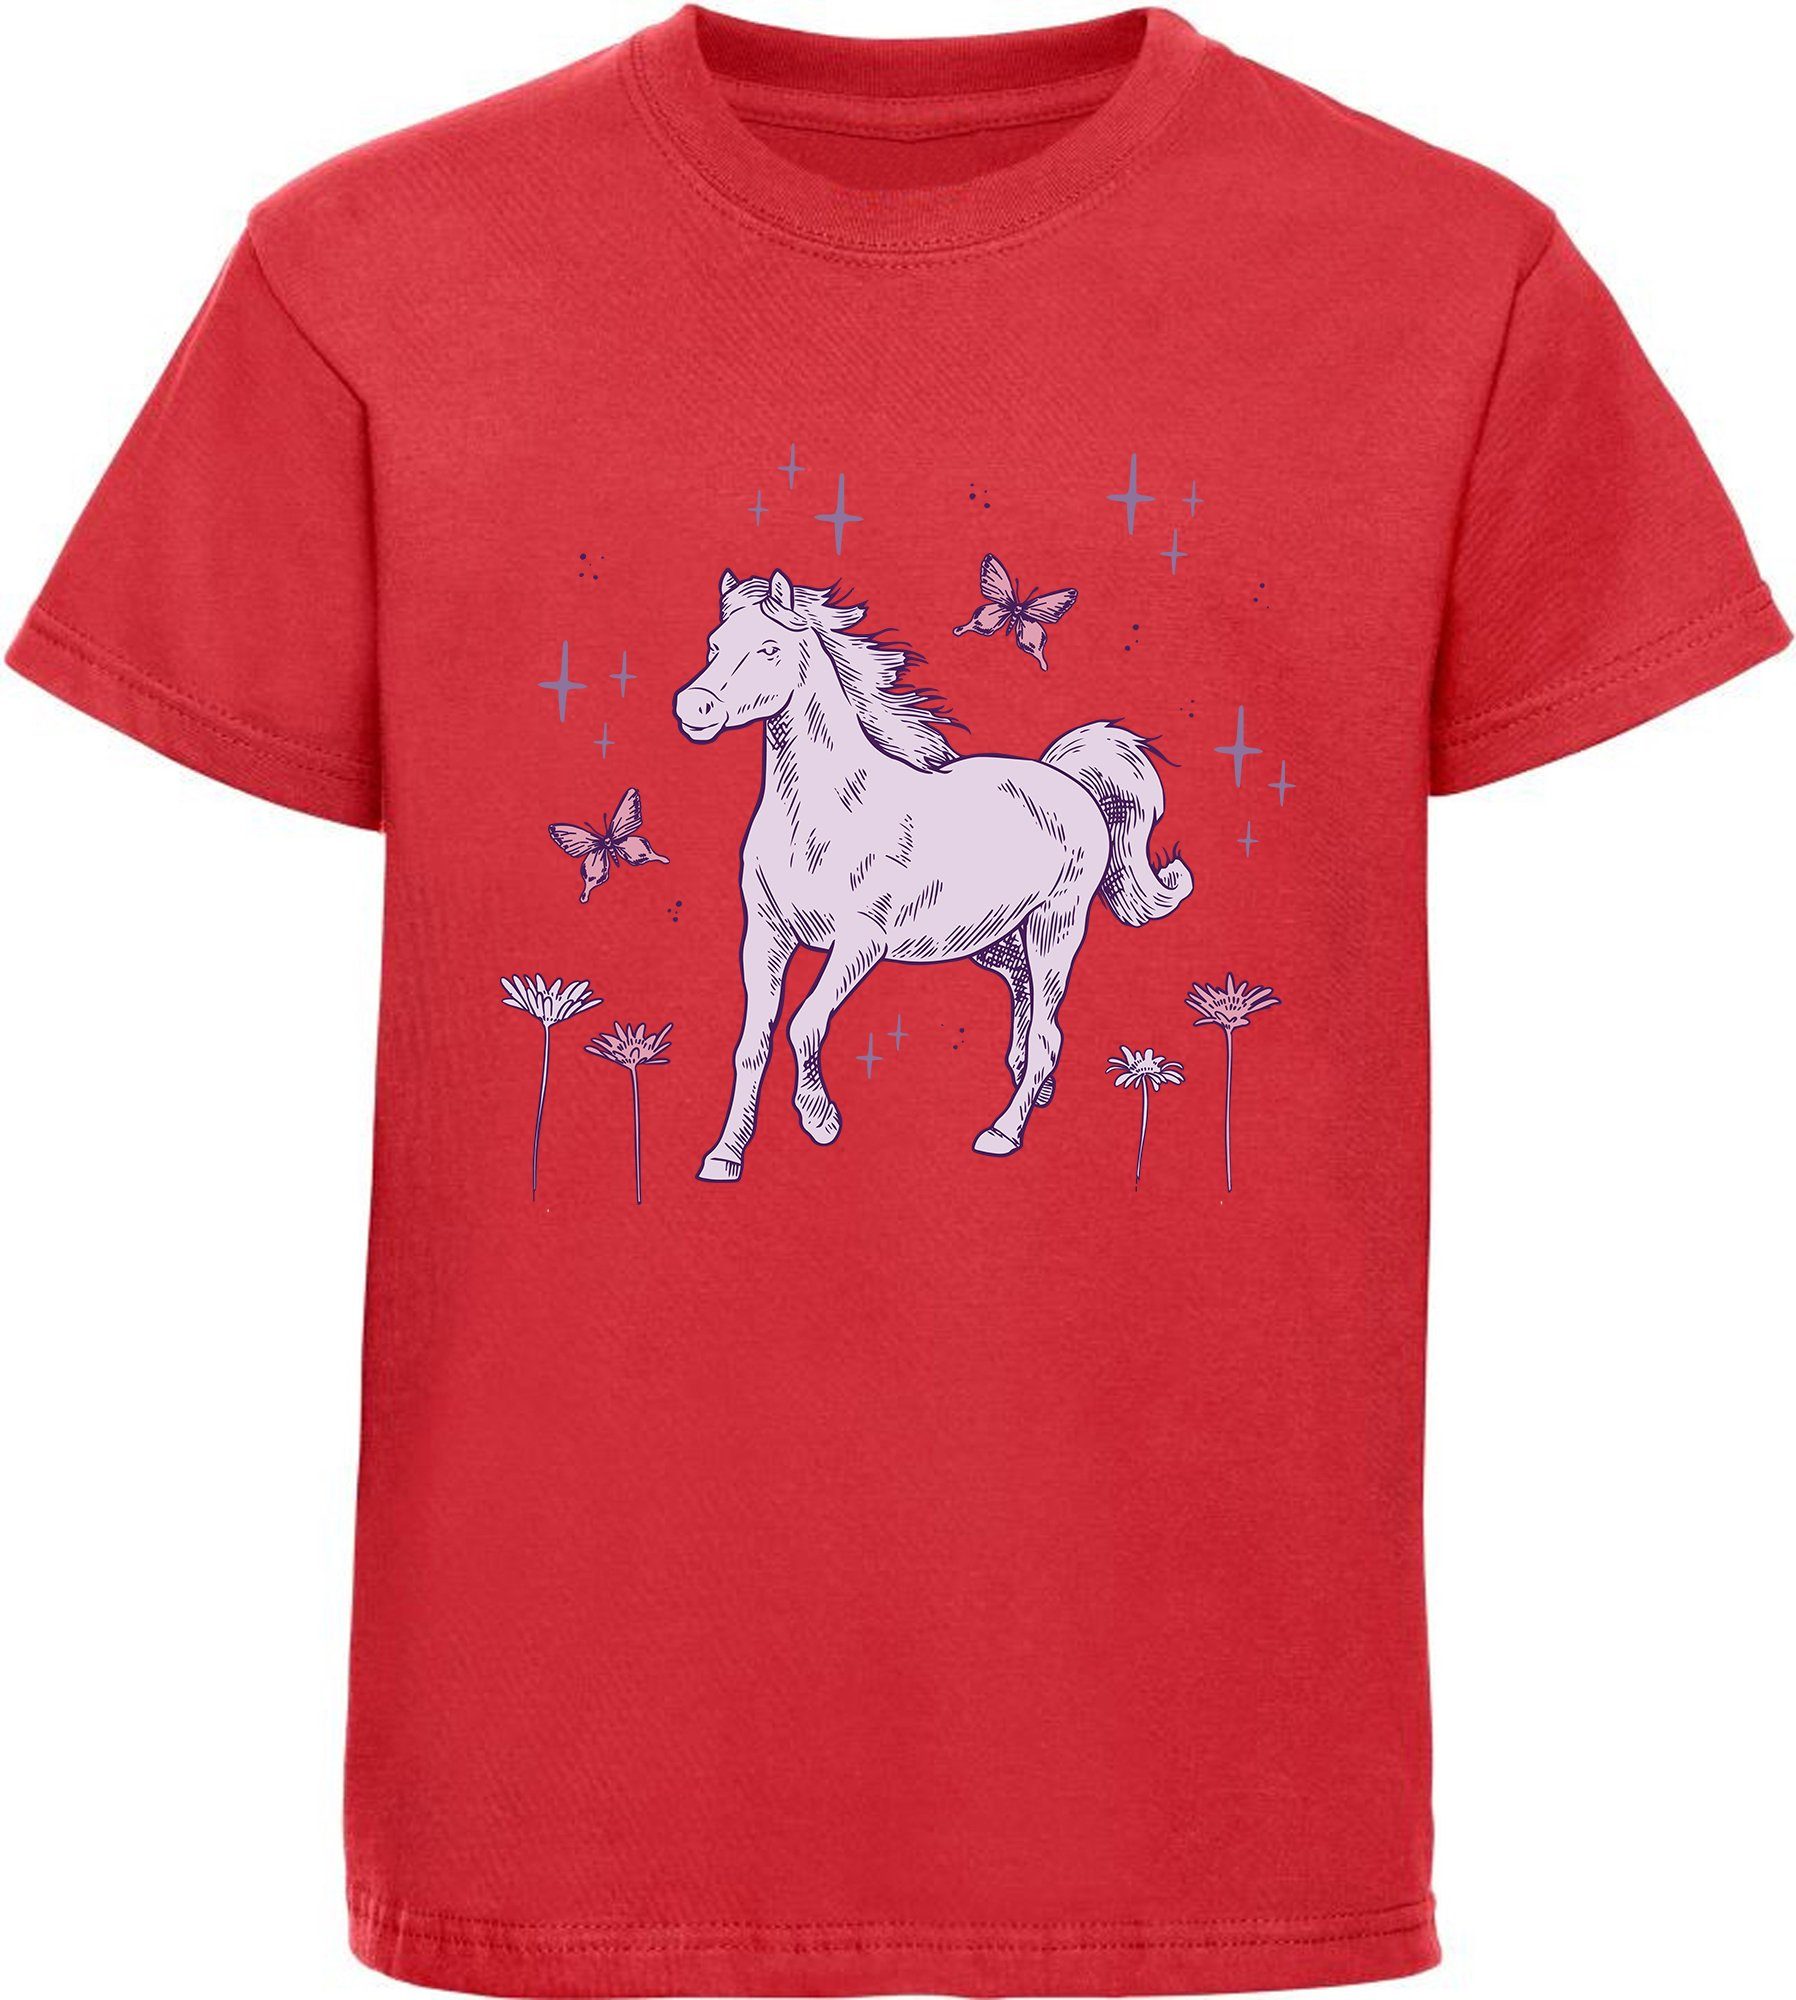 T-Shirt Baumwollshirt Print-Shirt Blumen Mädchen und Pferd mit rot i144 galoppierendes bedrucktes MyDesign24 Aufdruck,